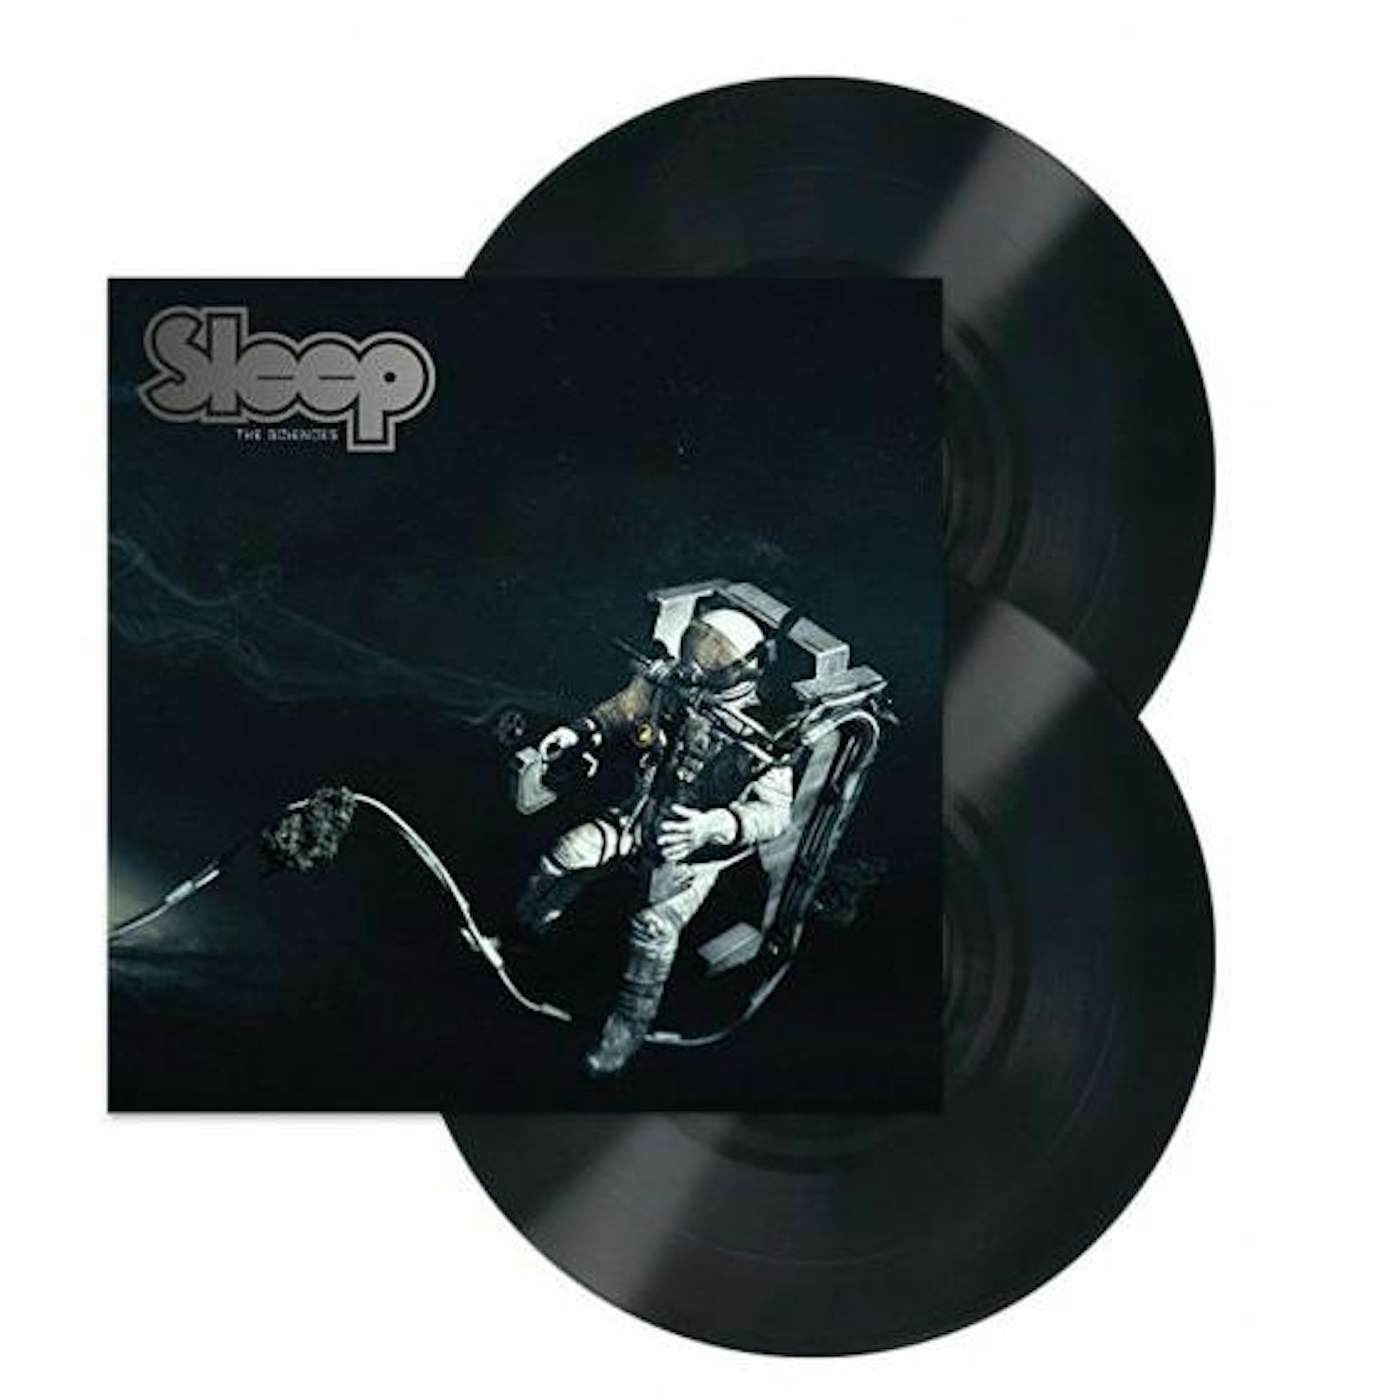 Sleep The Sciences Vinyl Record